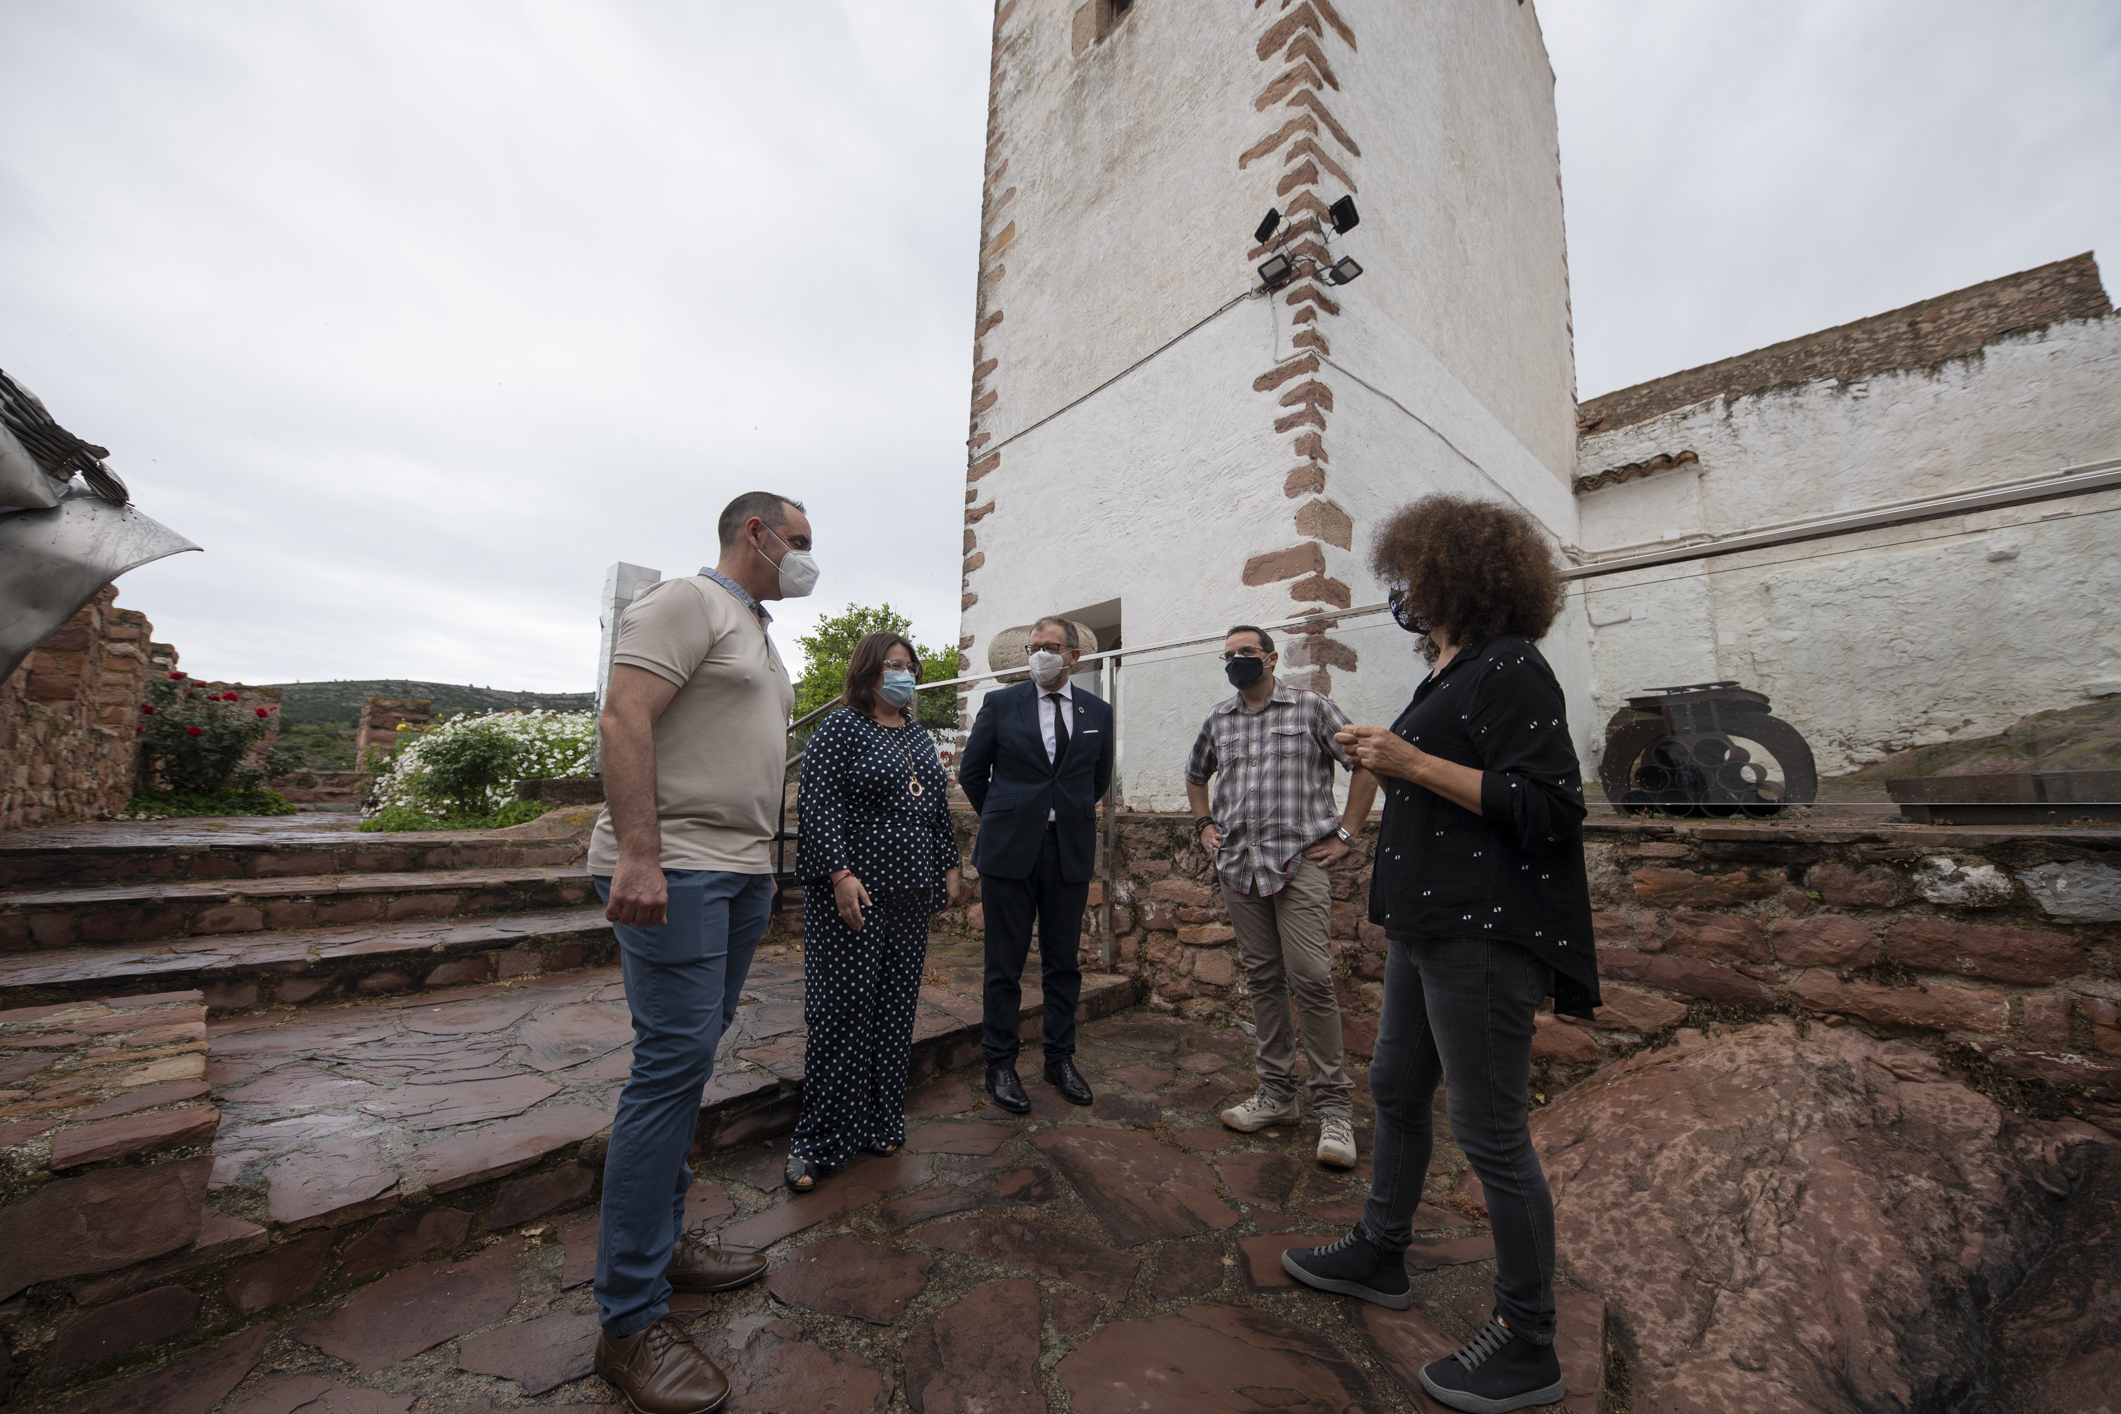 La Diputación de Castellón destina 220.000 euros a la remodelación y adecuación de la Casa Abadía para enlazarla con el Museo de Arte Contemporáneo de Vilafamés